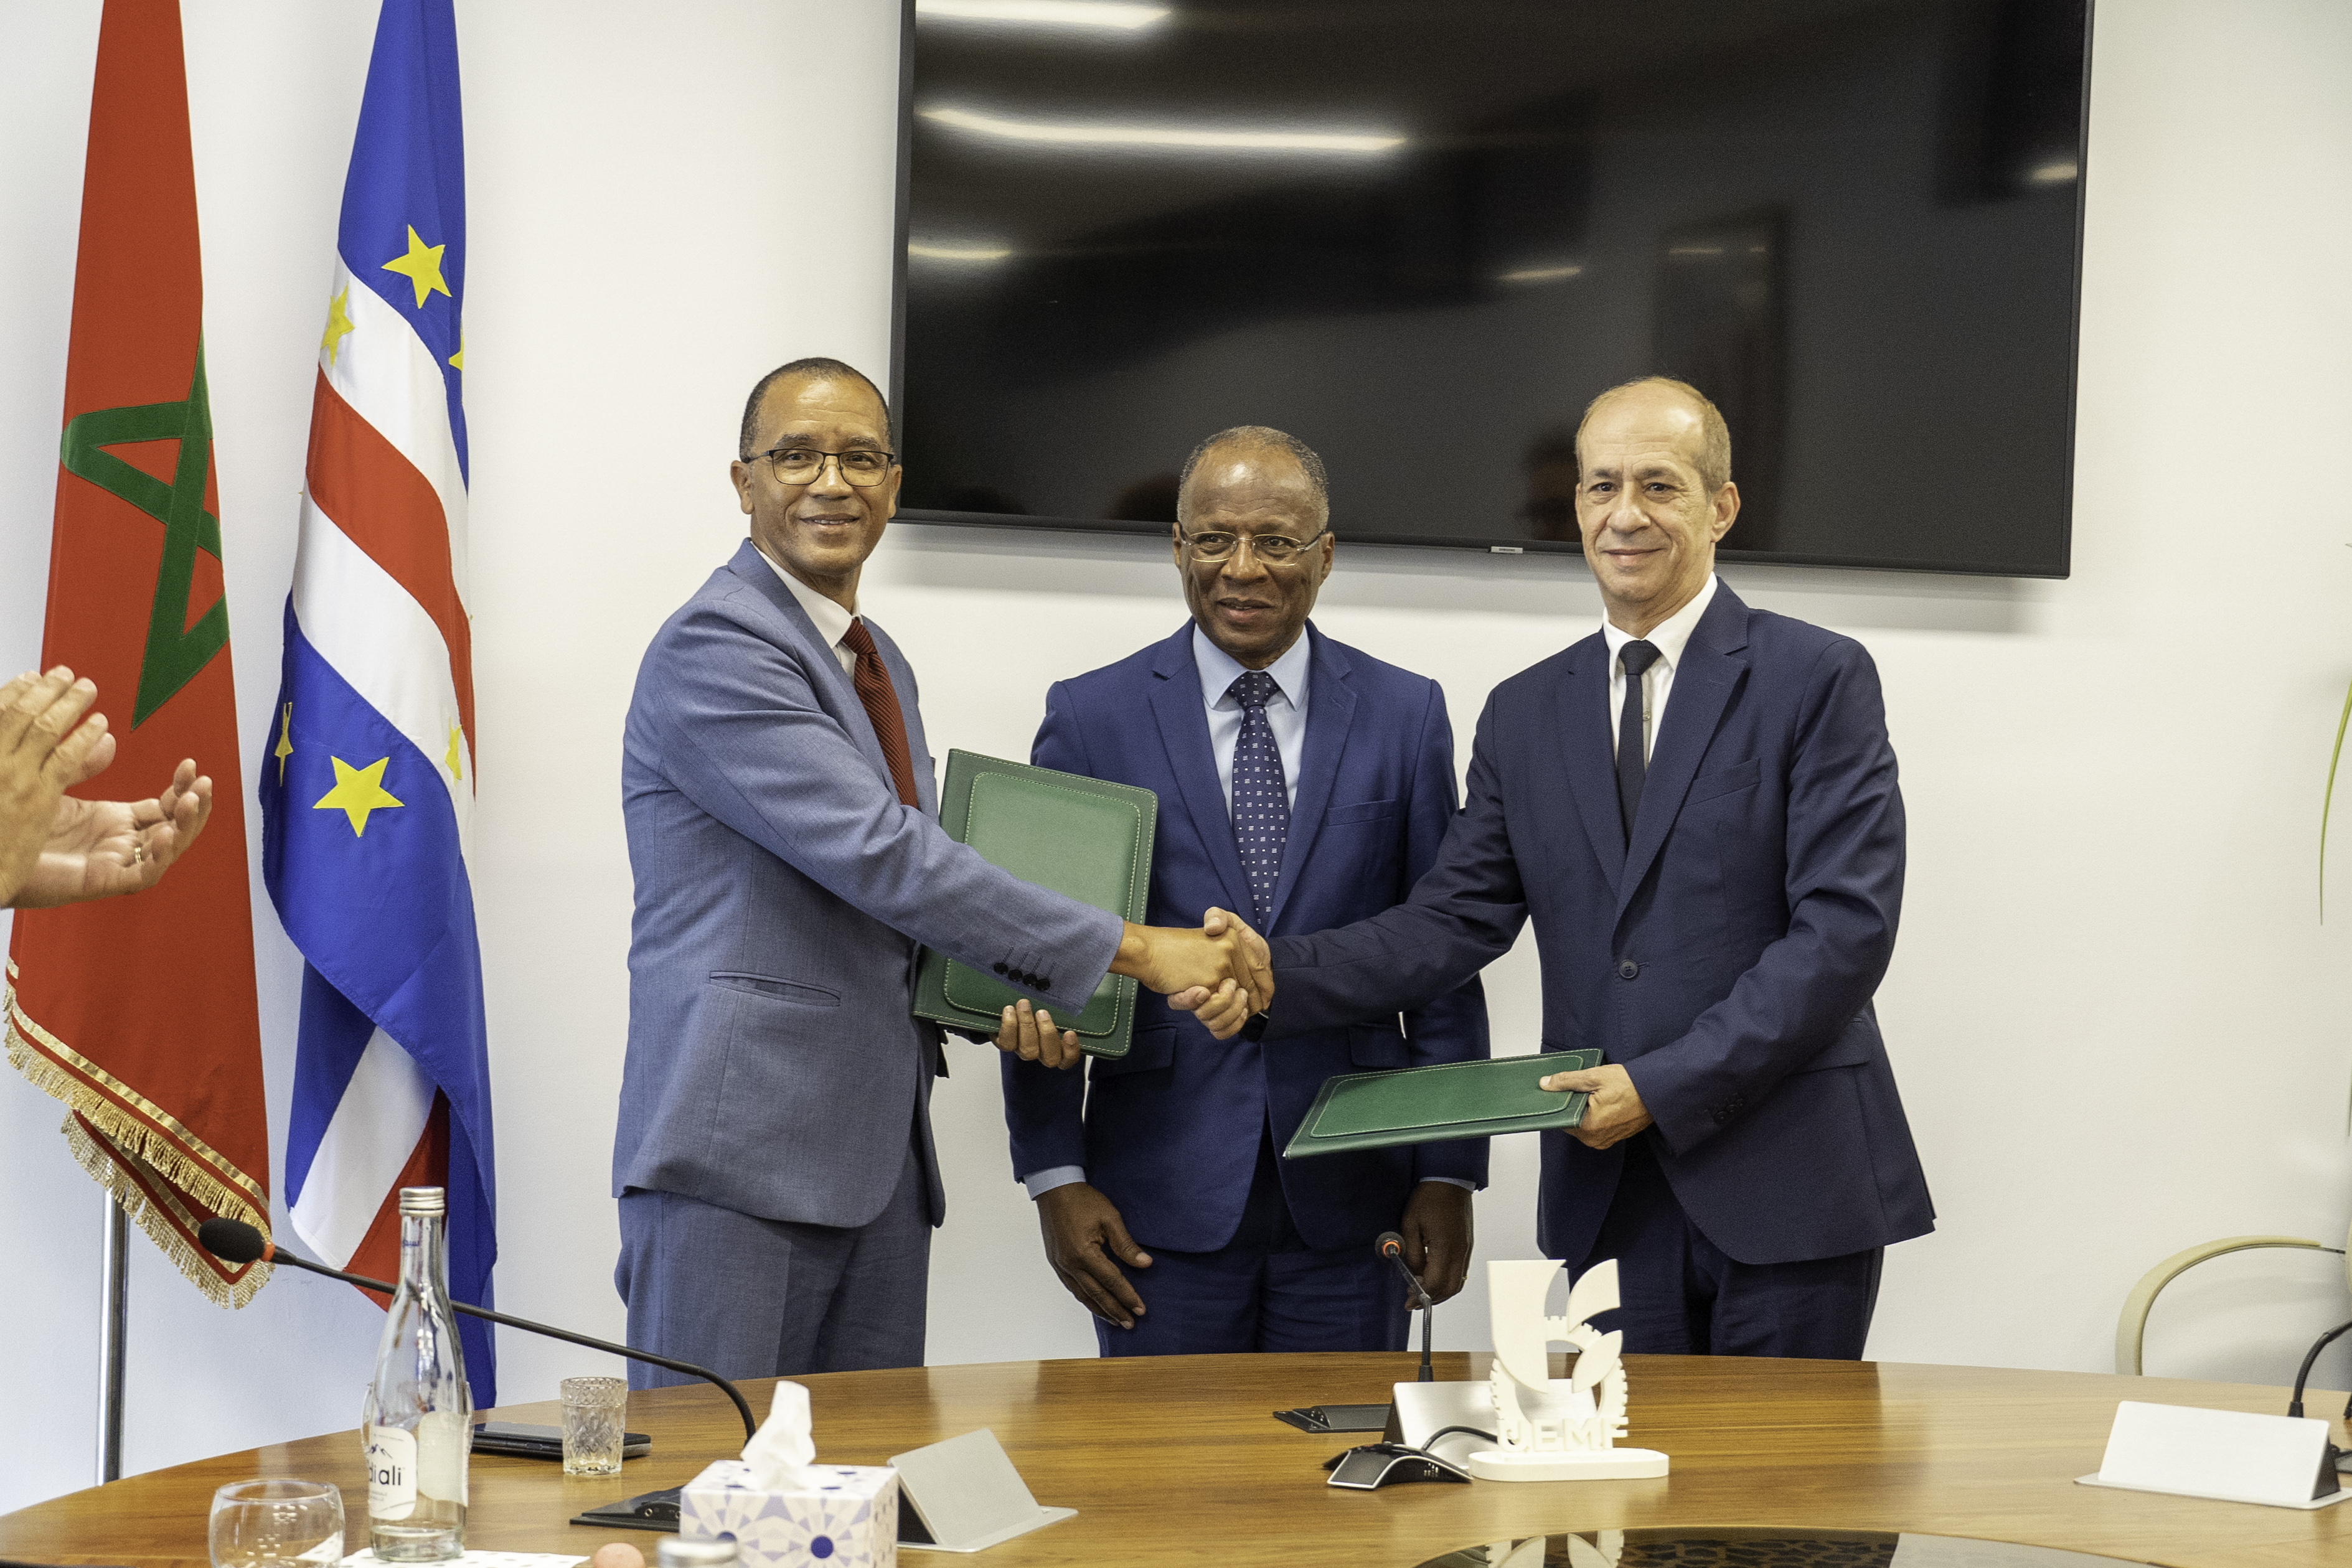 Visite à l’Universite Euromed de Fès de son excellence monsieur José Ulisses Correla E Silva, premier ministre de la république du Cap-Vert accompagné d’une délégation de haut niveau